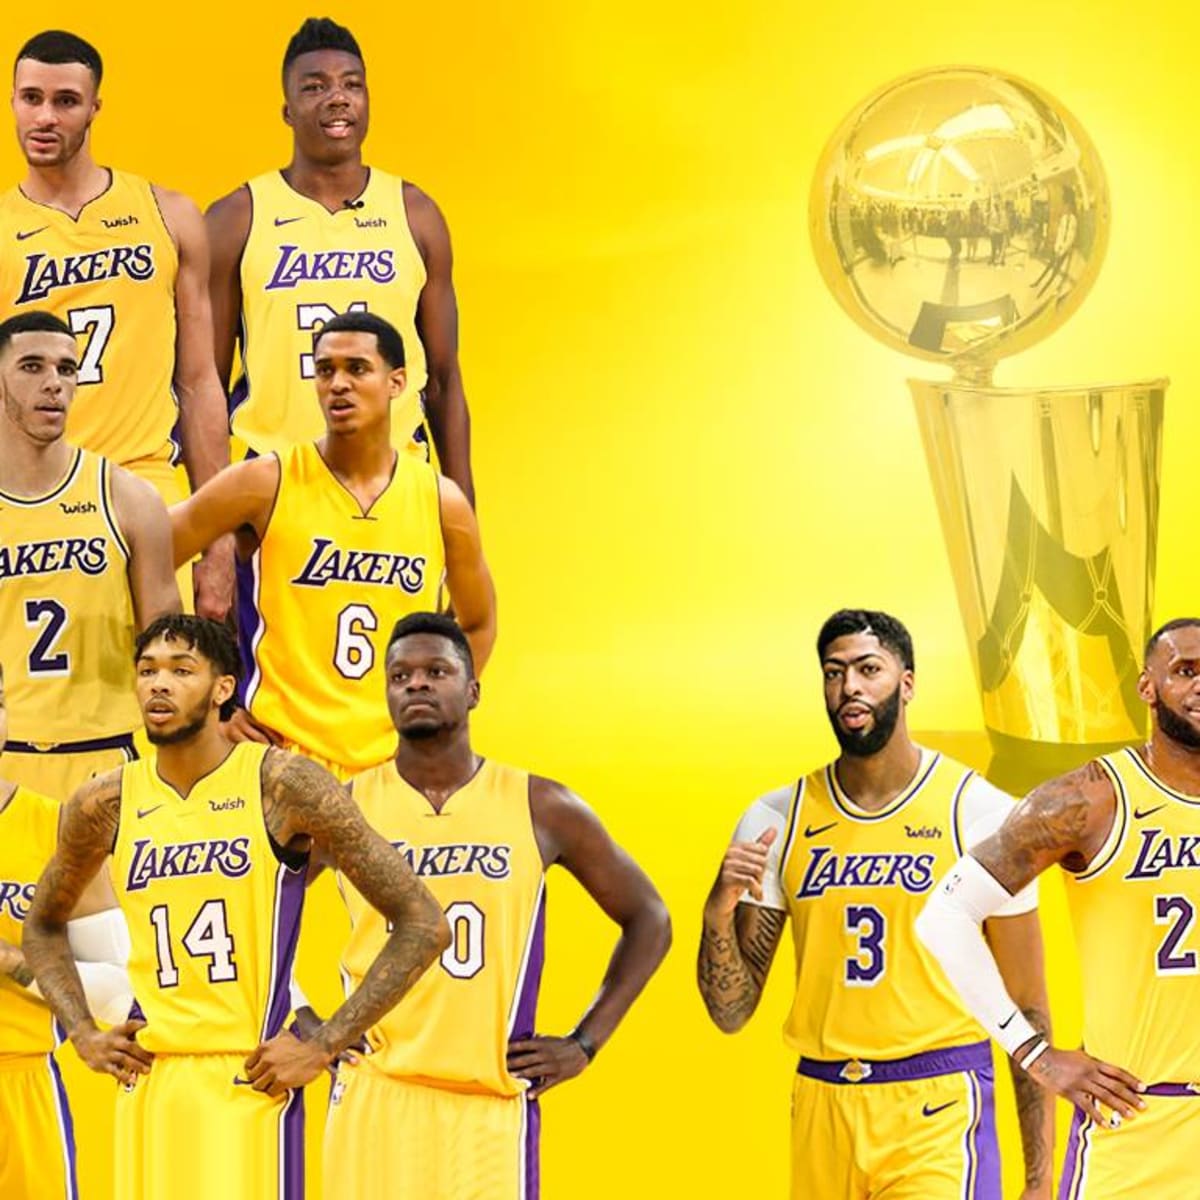 Lakers Hardcore - Legendary squad #LAKERCREW #LAKERSLAND #LAKERSHARDCORE